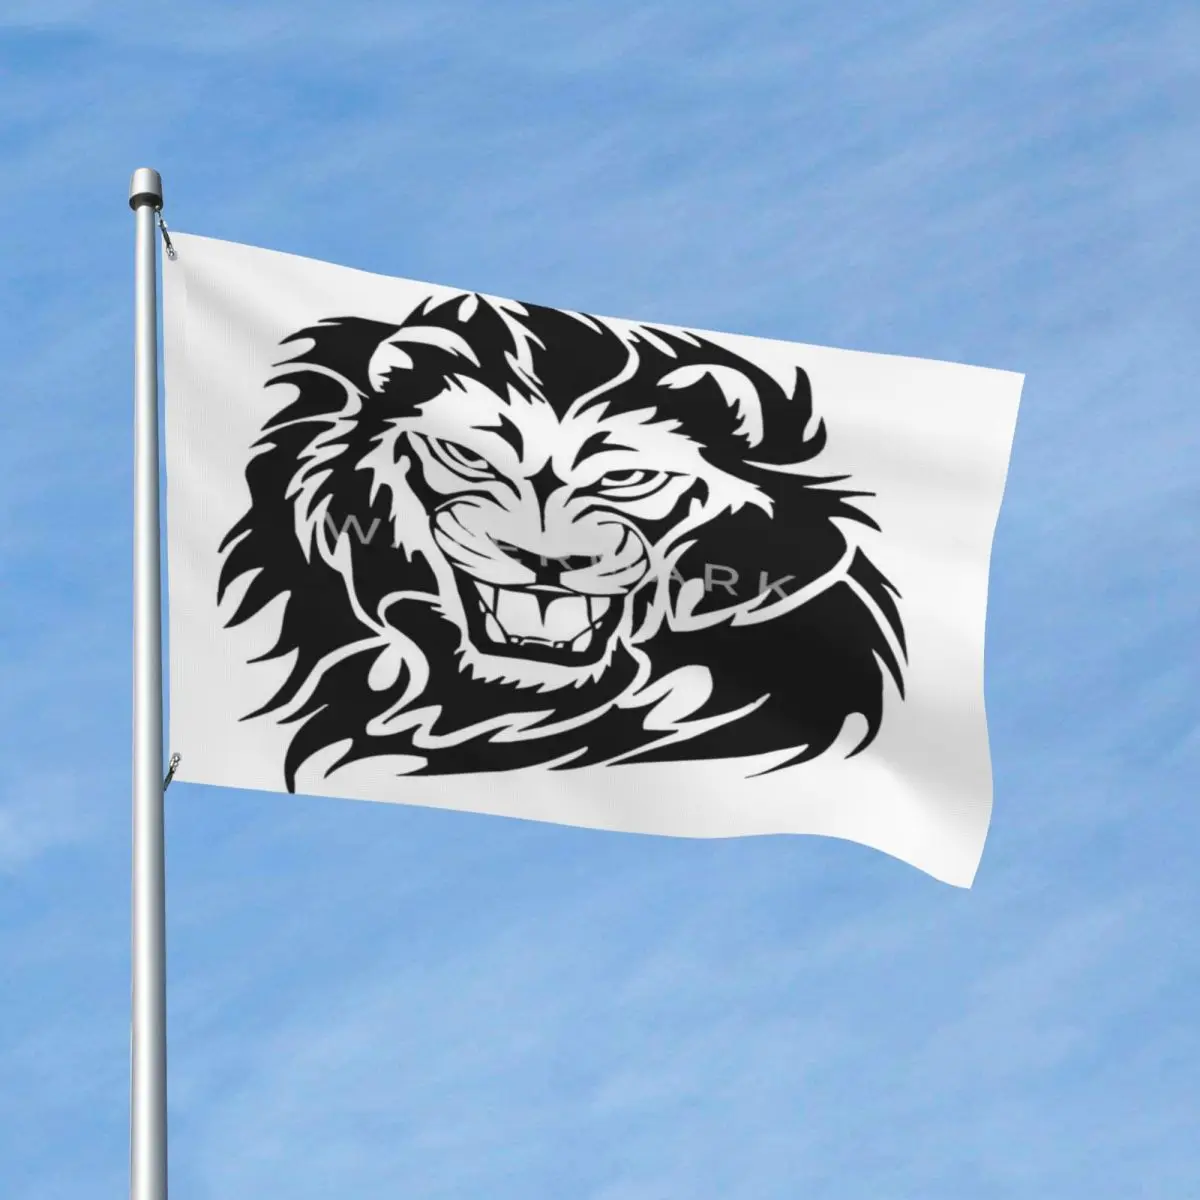 

Силуэт головы льва декор с флагами полиэфирный материал легко повесить выцветает устойчивый драпировка яркий